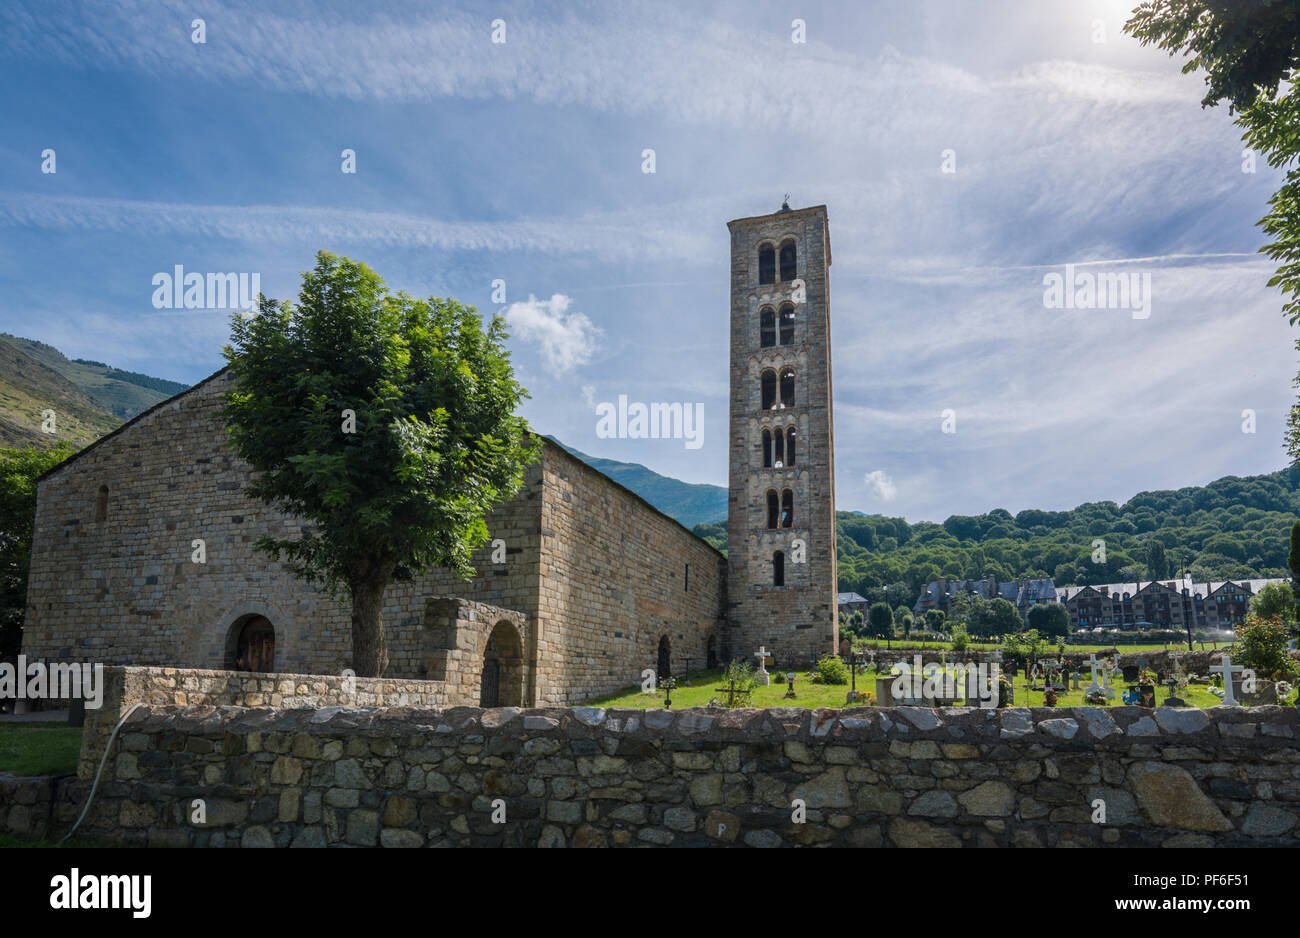 Beffroi et Eglise de Sant Climent de Taüll, Catalogne, Espagne. Églises romanes catalanes de la Vall de Boi est déclaré site du patrimoine mondial de l'UNESCO Banque D'Images